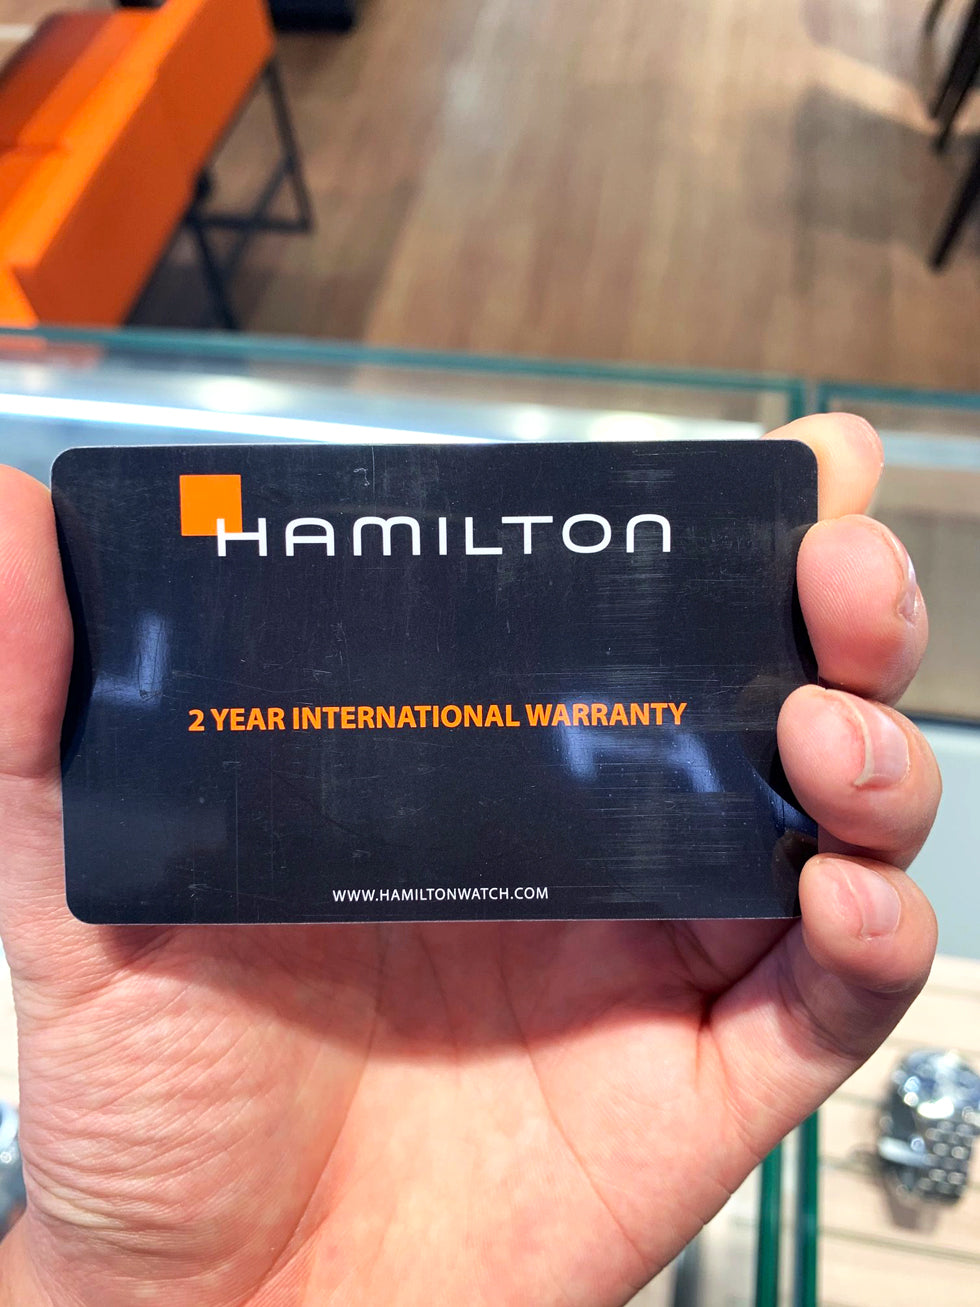 Hamilton 2 year warranty